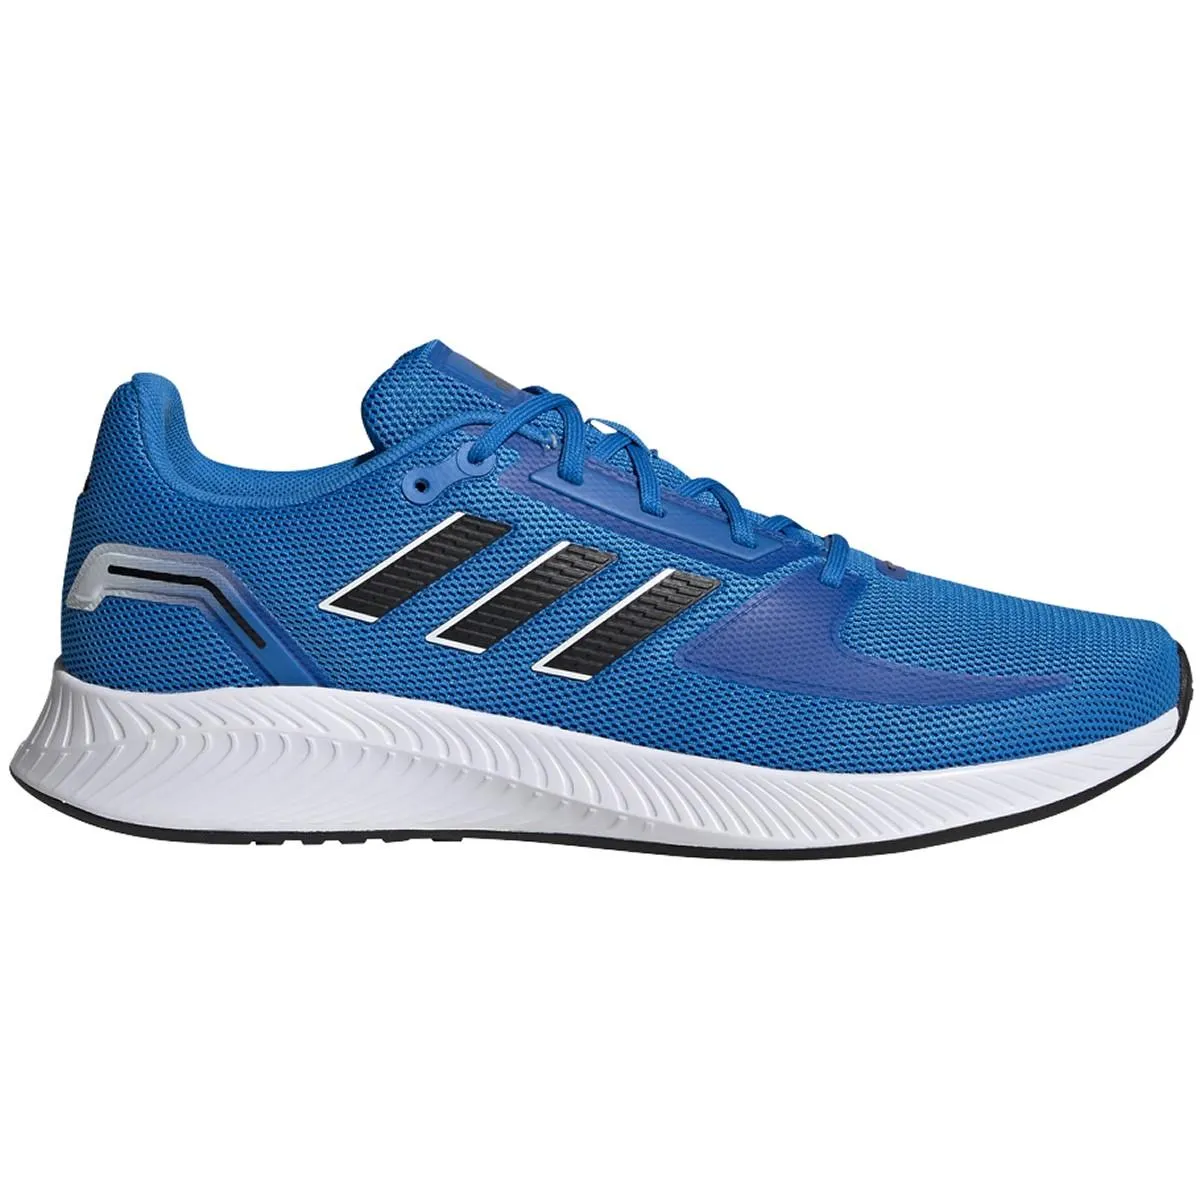 E184398 Adidas Runfalcon 2.0 Mens Running Shoes